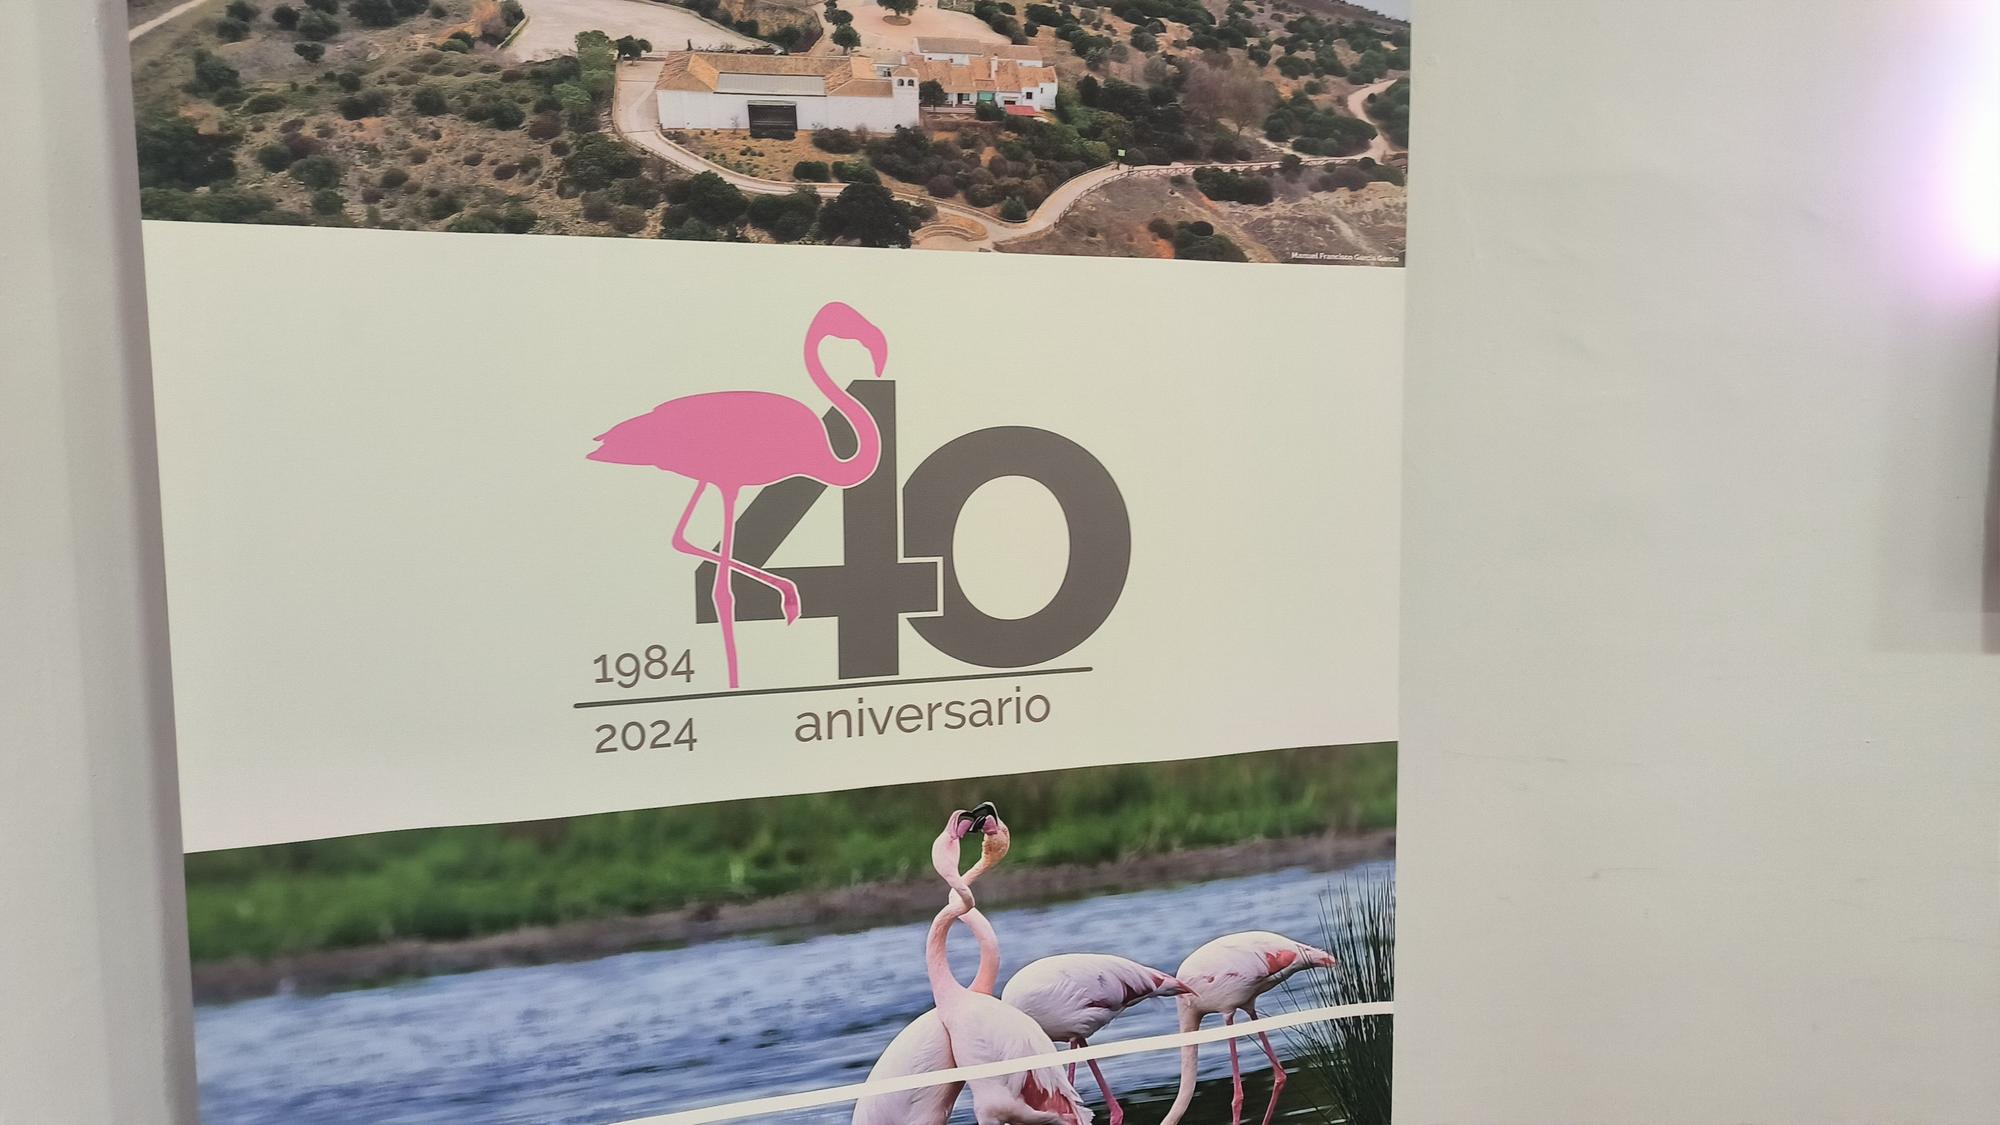 Acto de conmemoración de los 40 años de la Laguna de Fuente de Piedra como Reserva Natural.